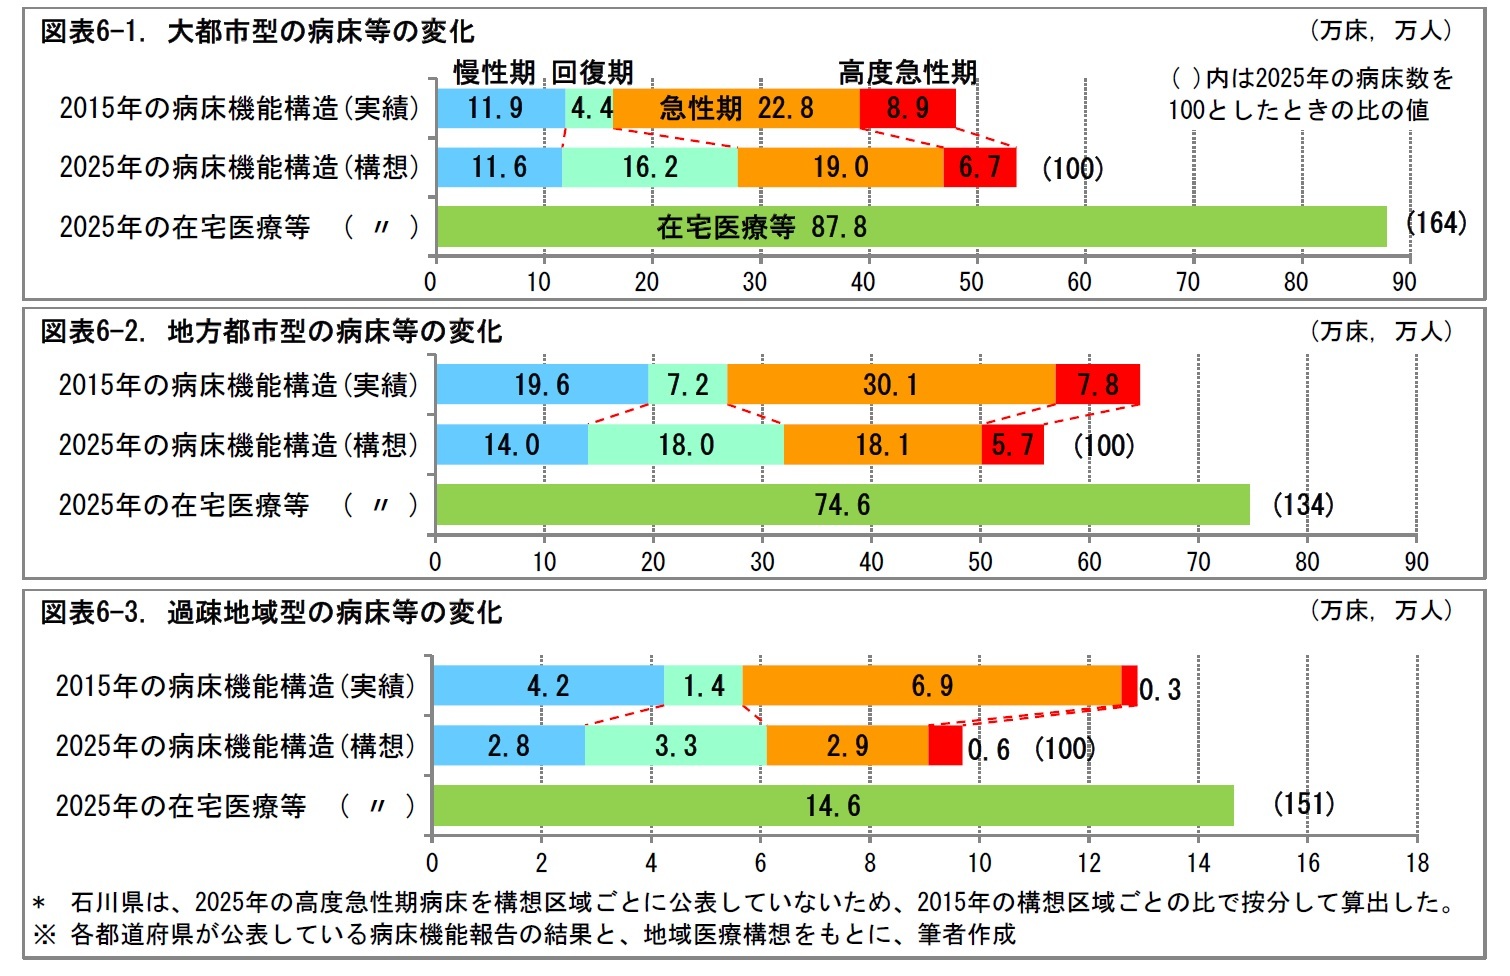 図表6-1. 大都市型の病床等の変化/図表6-2. 地方都市型の病床等の変化/図表6-3. 過疎地域型の病床等の変化